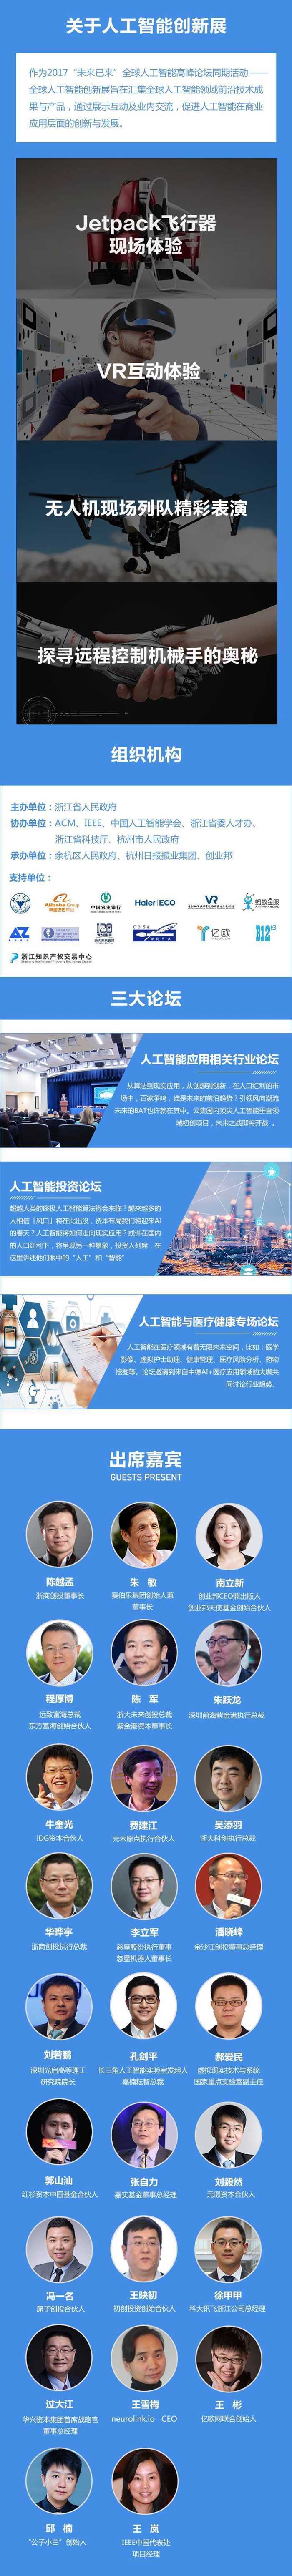 杭州未来科技城活动行设计－关于论坛最新 - 副本副本.jpg